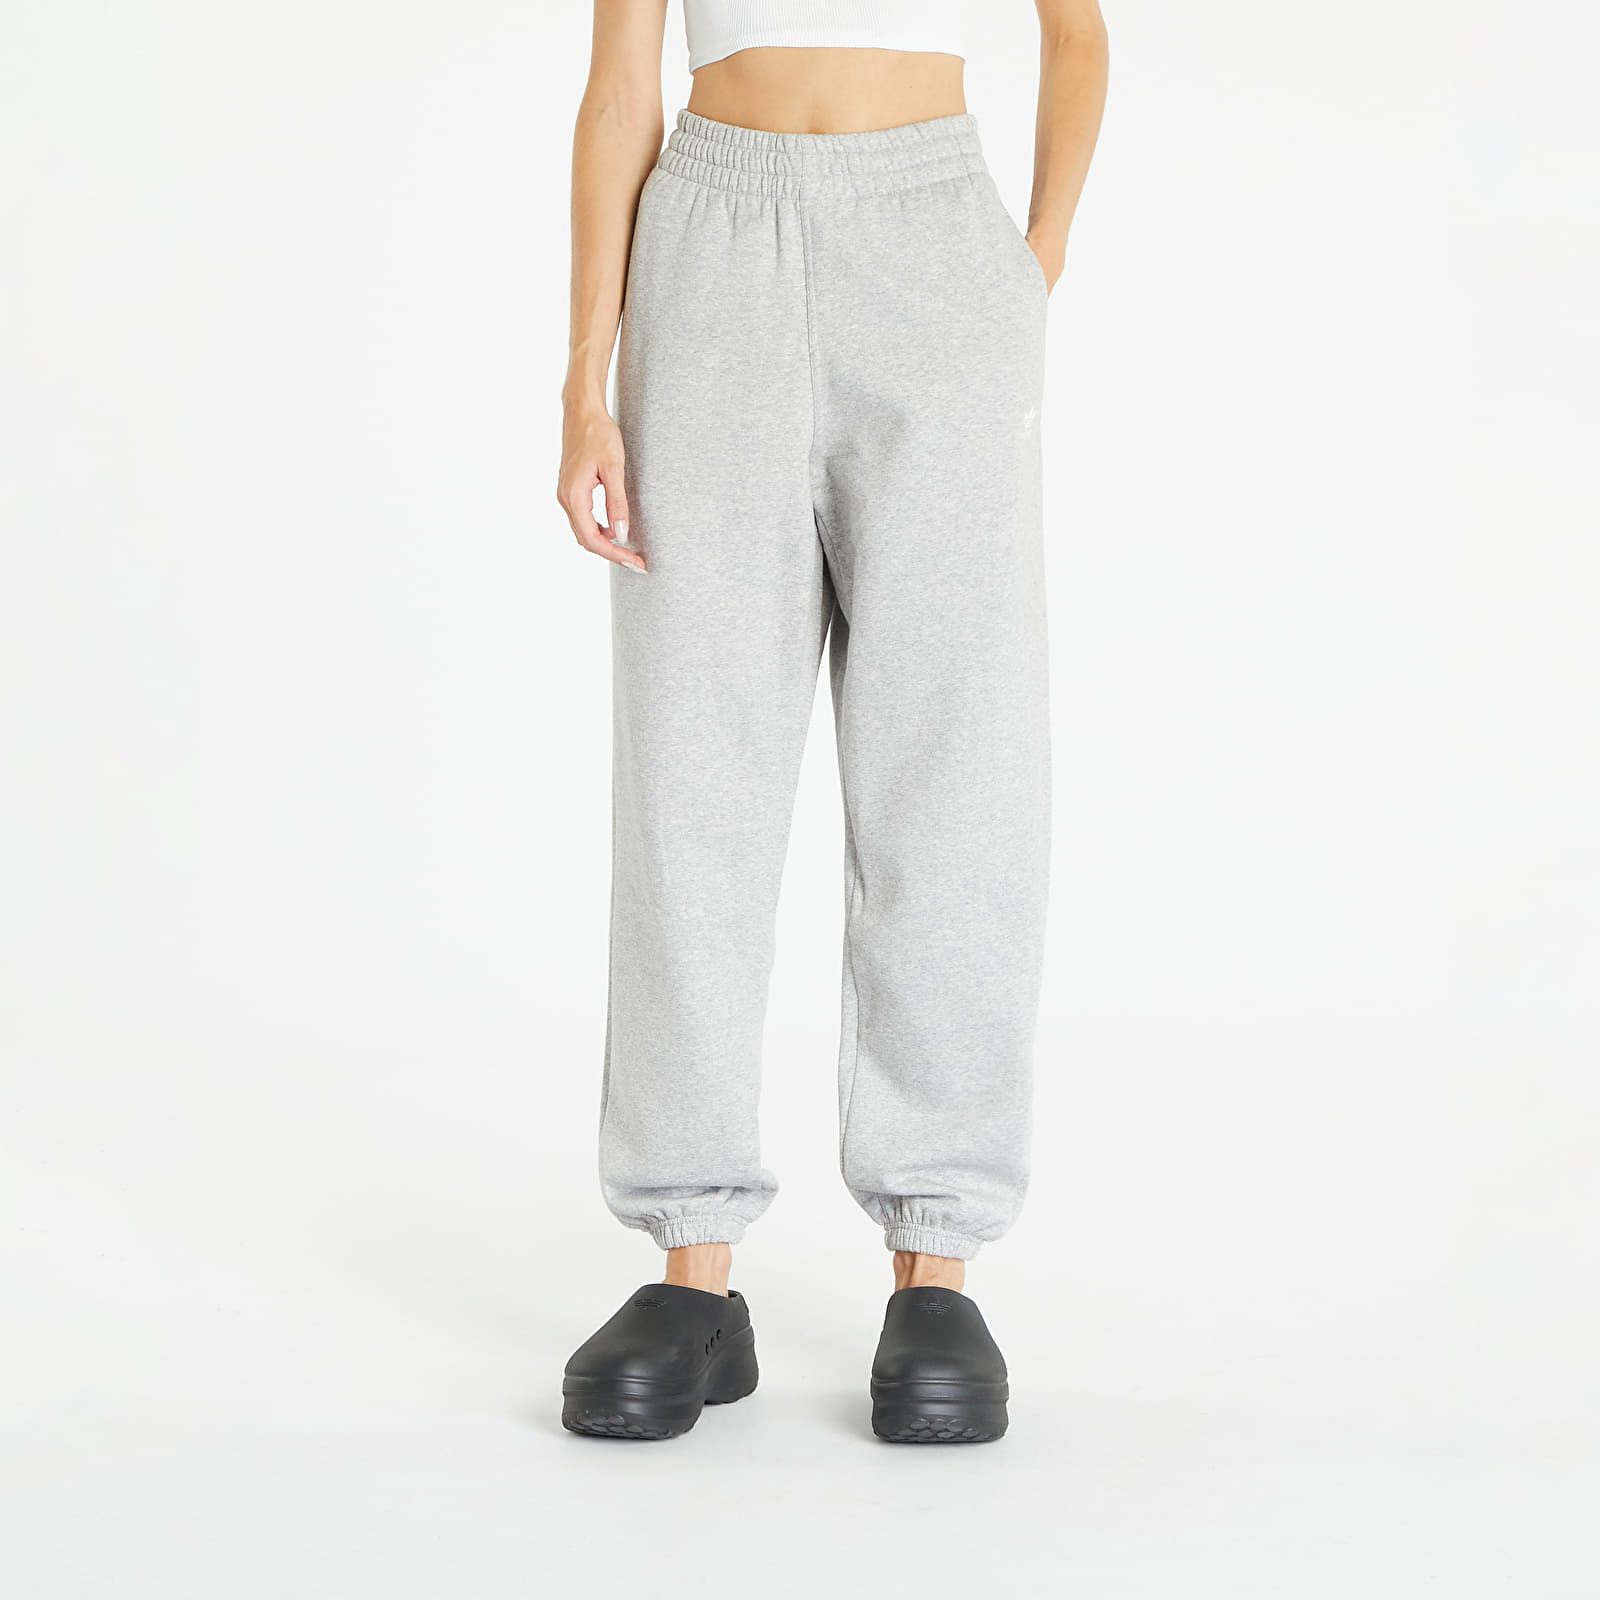 Heather Originals Fleece Pants Grey Essentials Jogger Joggers Queens Medium | adidas